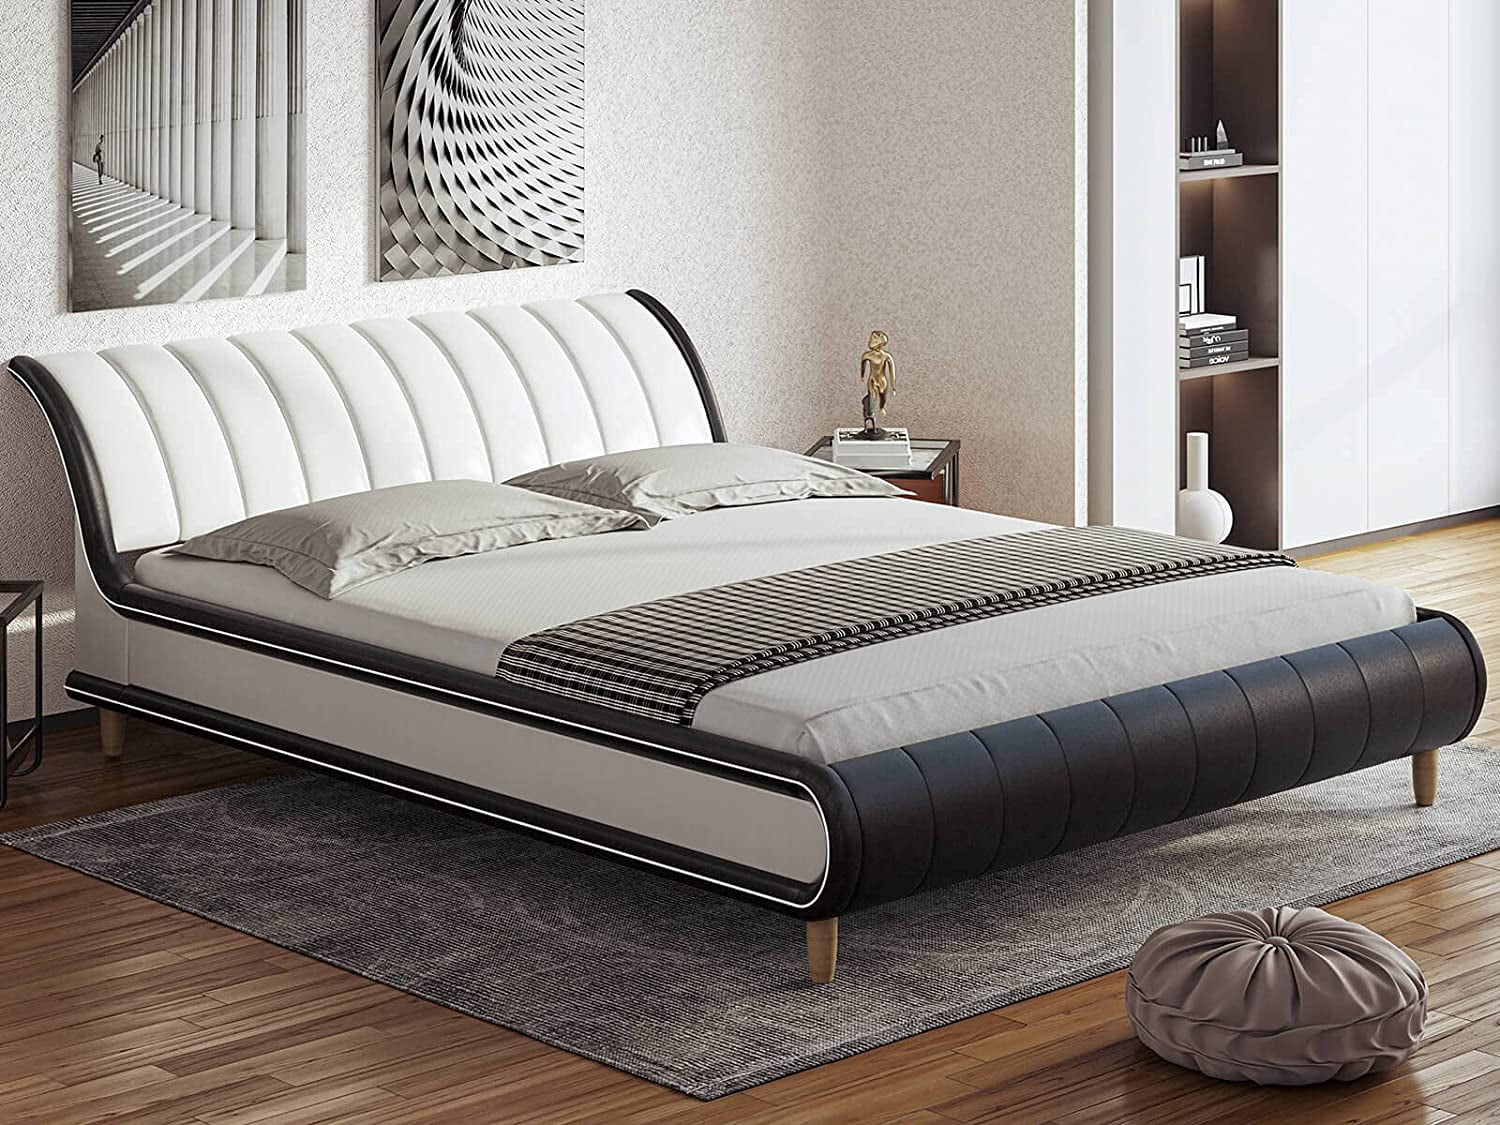 Queen Bed Upholstered Black Faux Leather Wood Platform Bed Slats Headboard Frame 